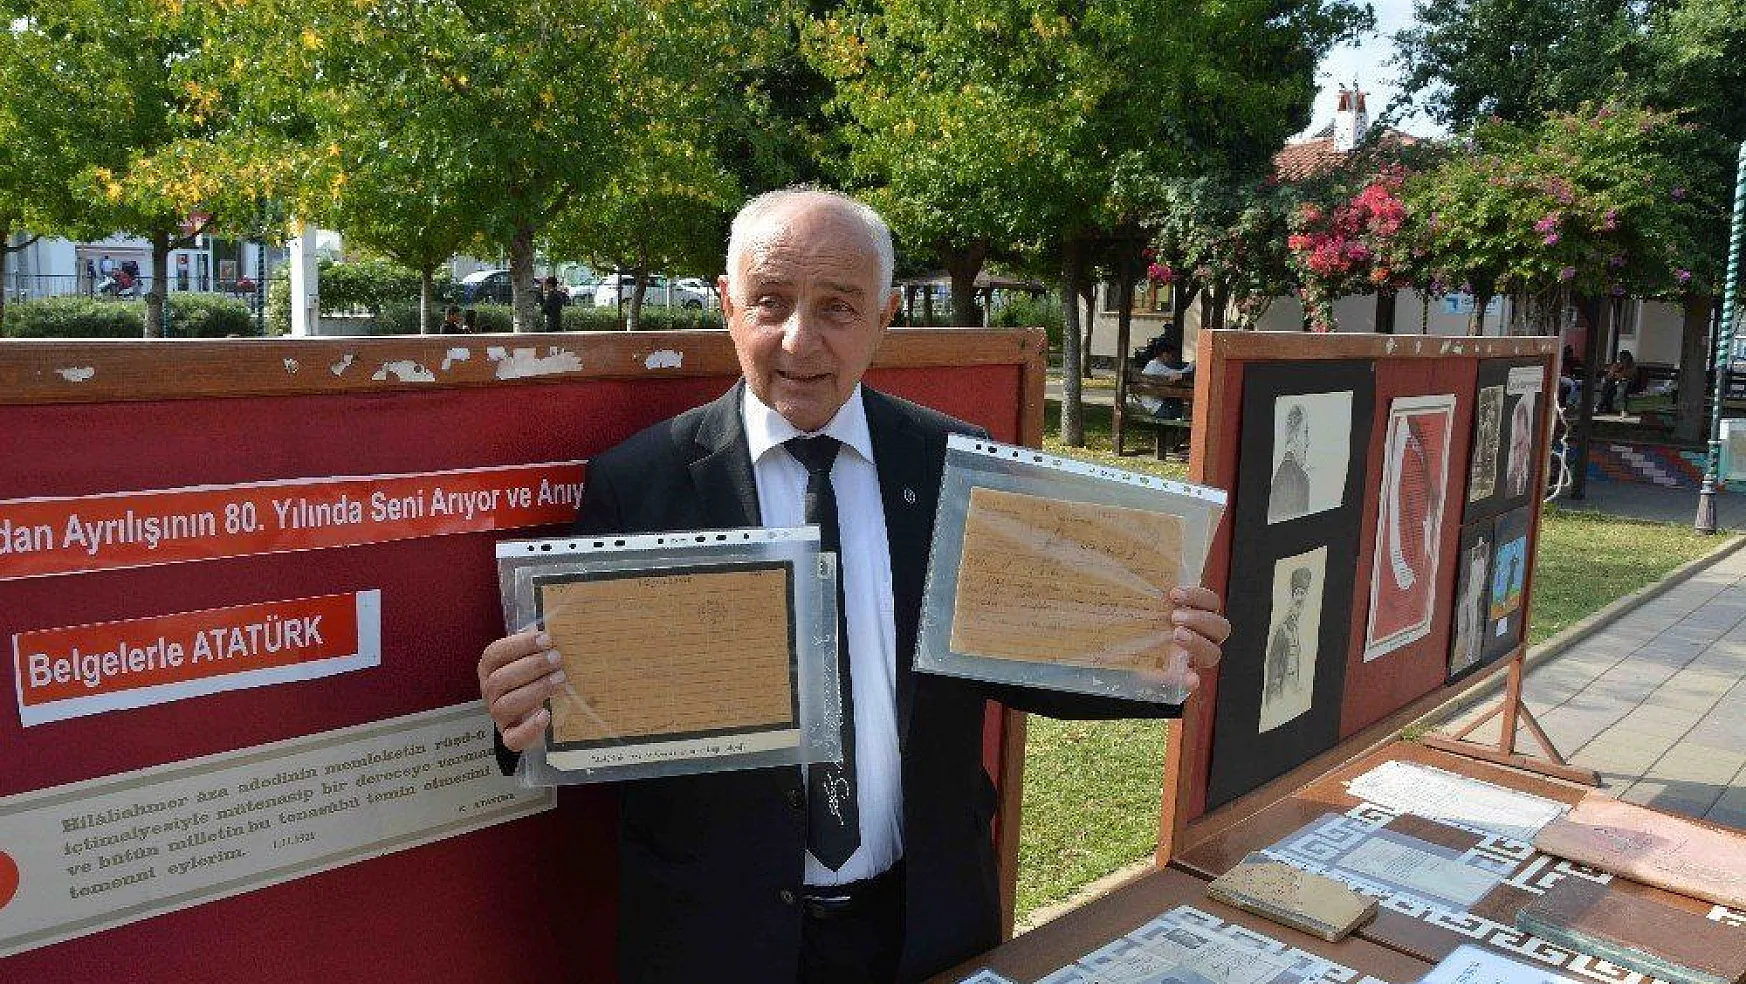 Ortaca'da Atatürk'ün gönderdiği telgraflar sergilendi